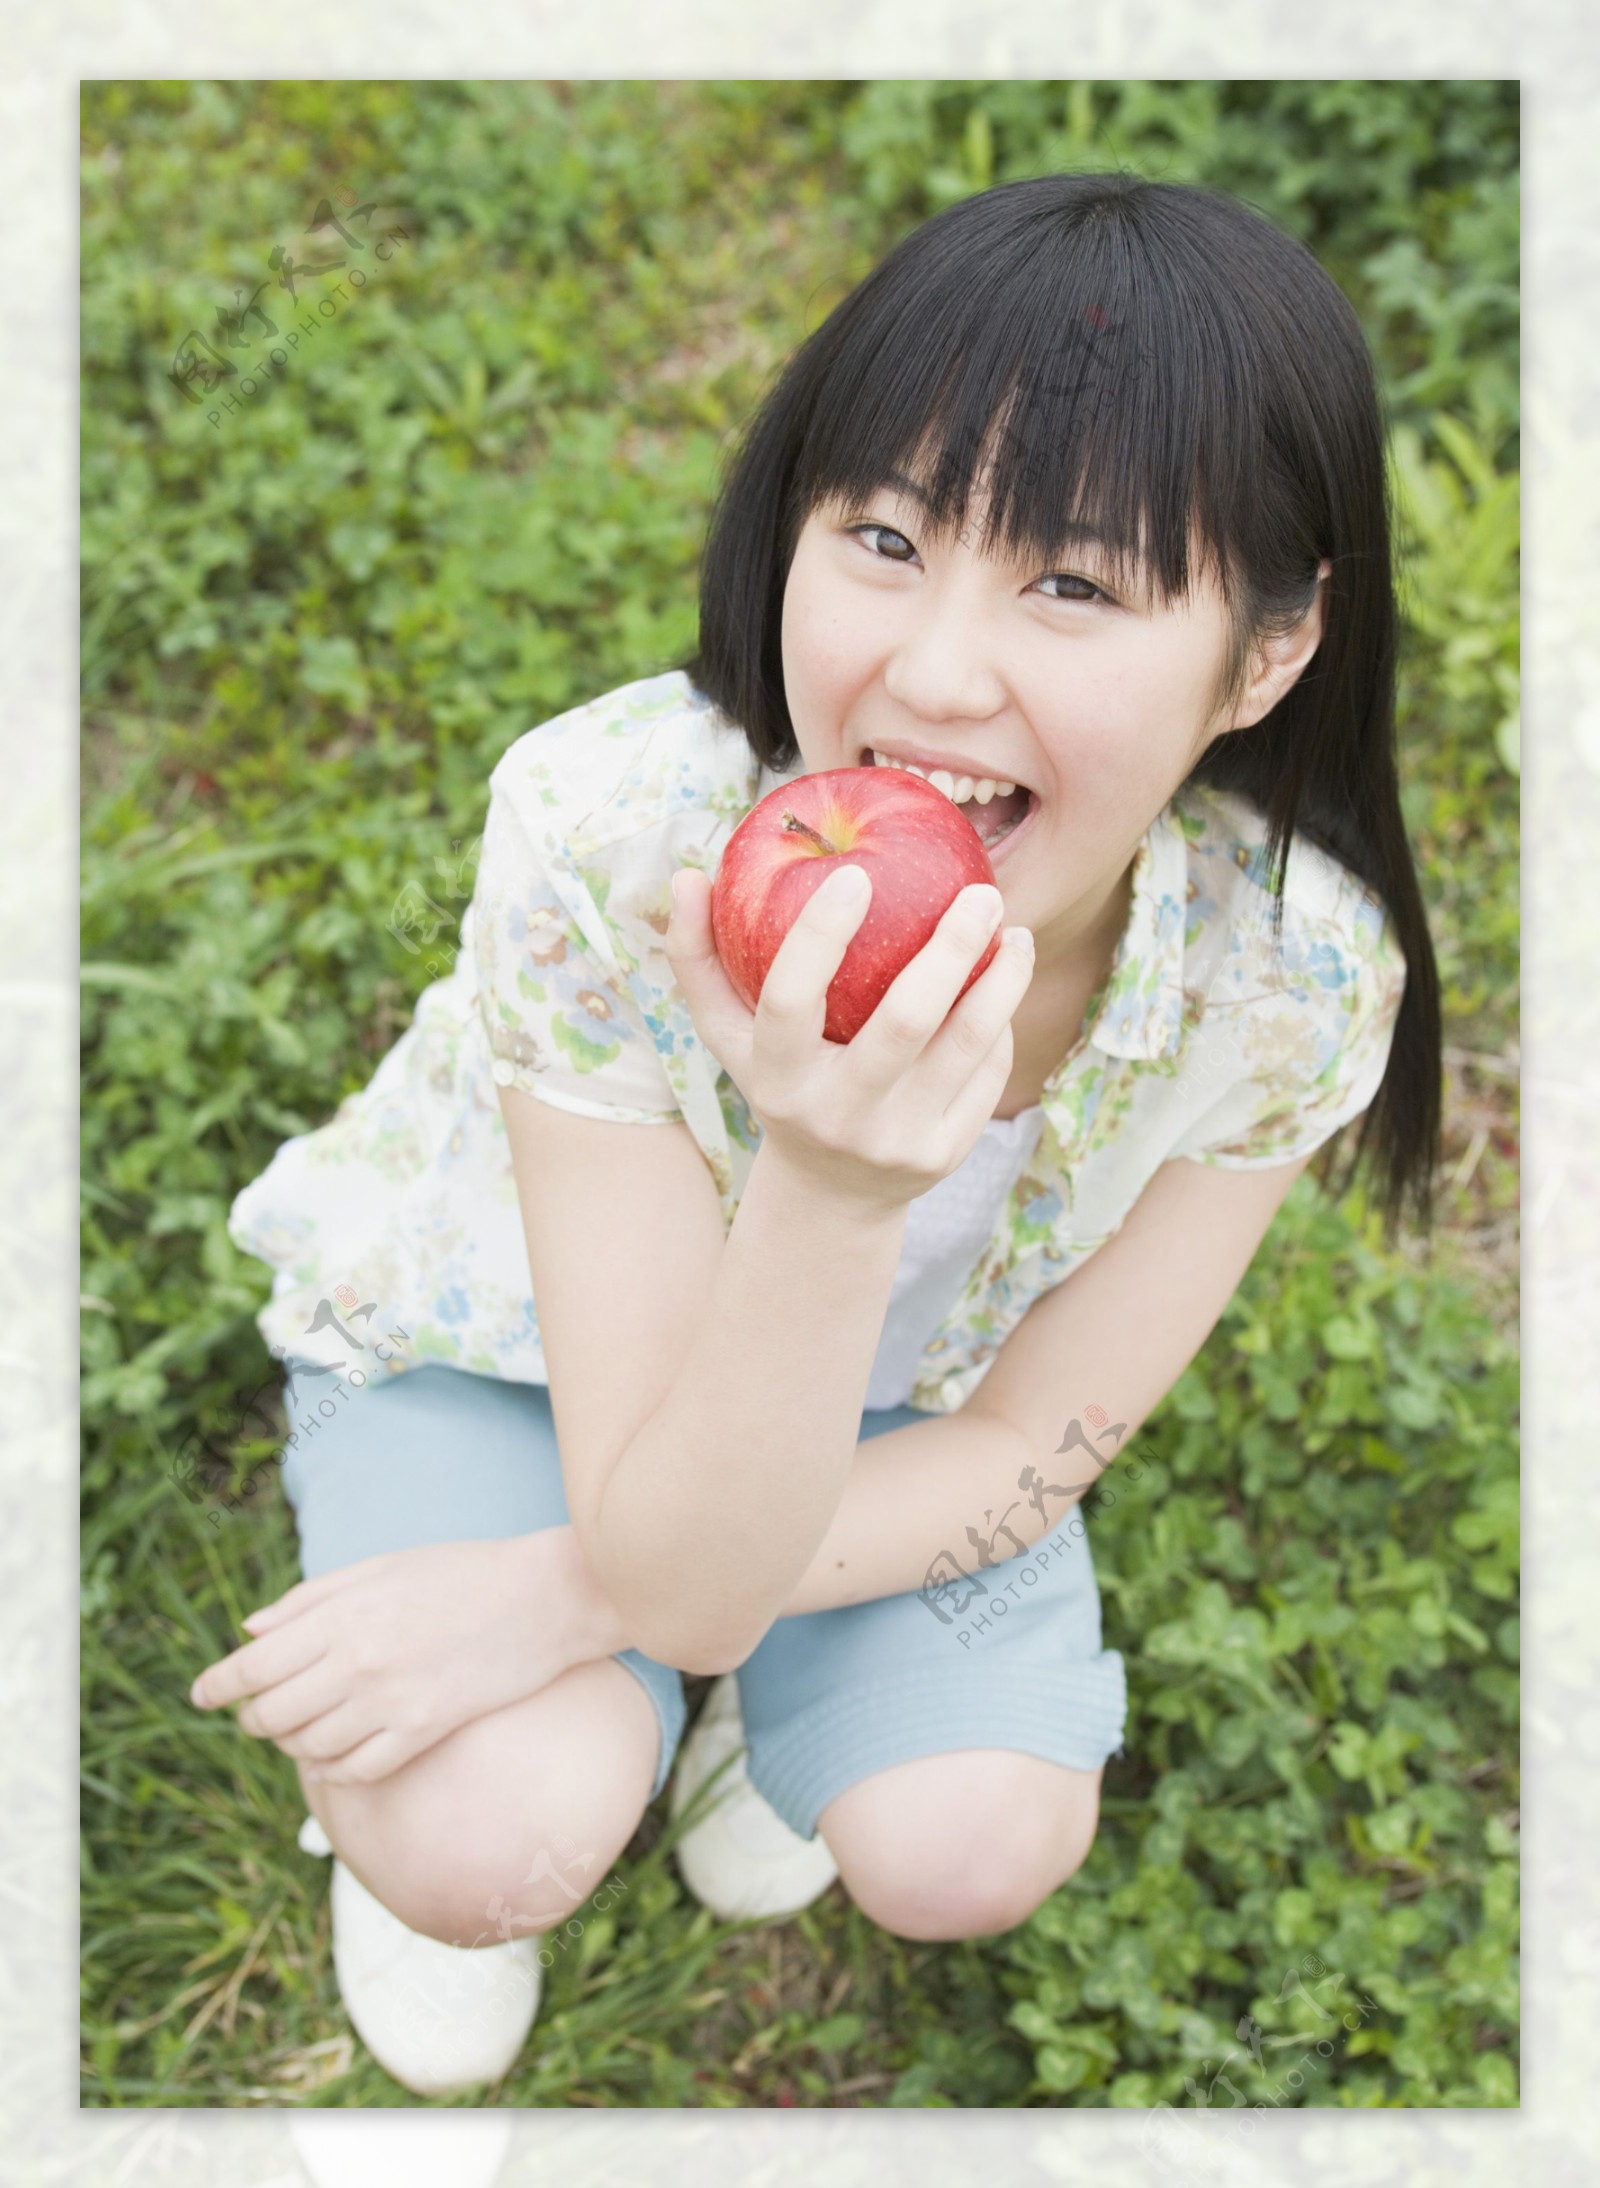 吃苹果的女生图片